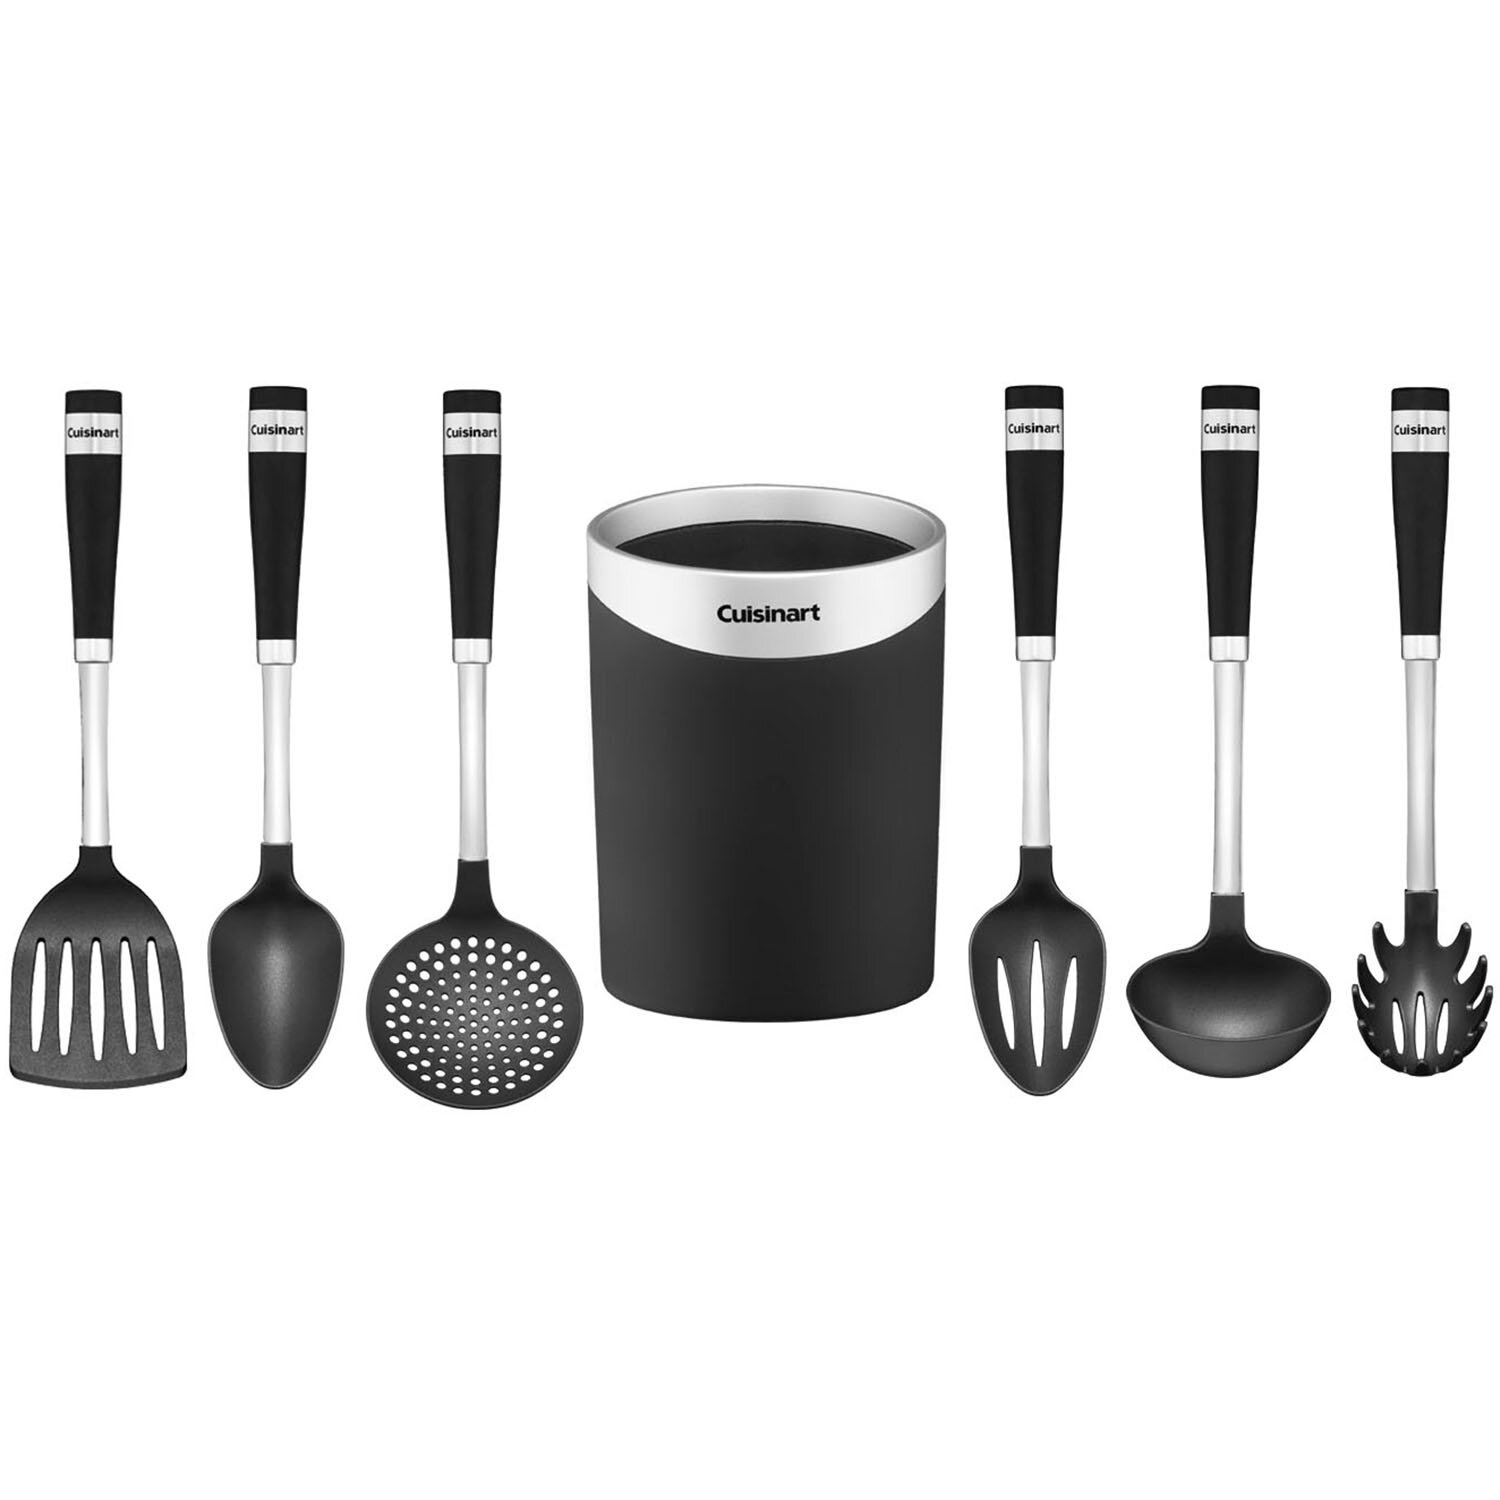 https://assets.wfcdn.com/im/03966319/compr-r85/1757/17579217/cuisinart-7-piece-assorted-kitchen-utensil-set.jpg